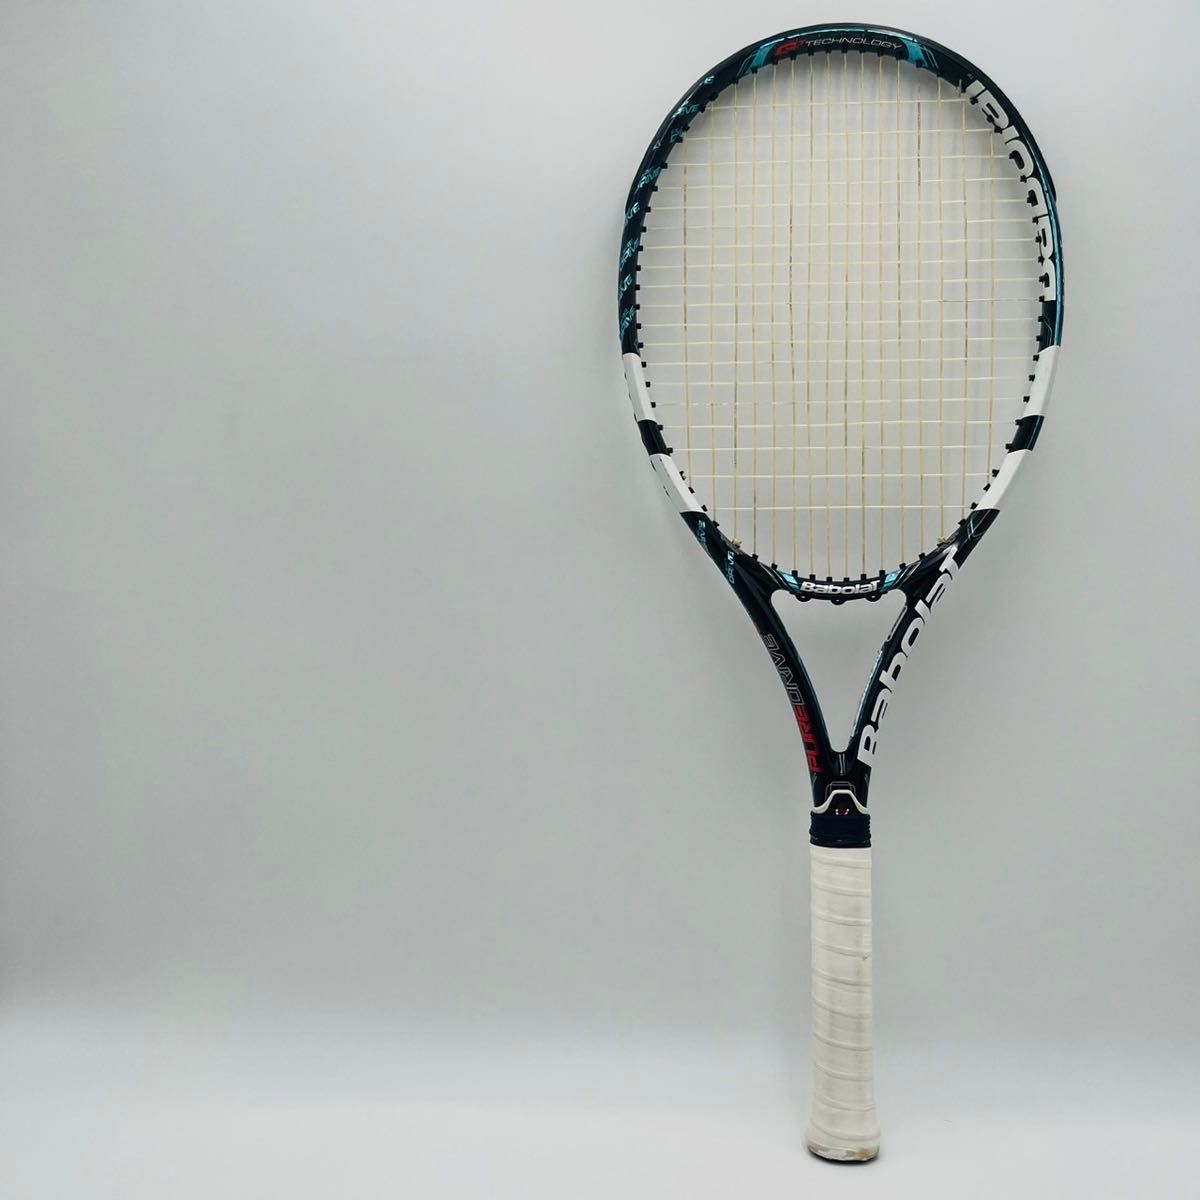 【良品】Babolat ピュアドライブ 2012年 硬式テニス ラケット